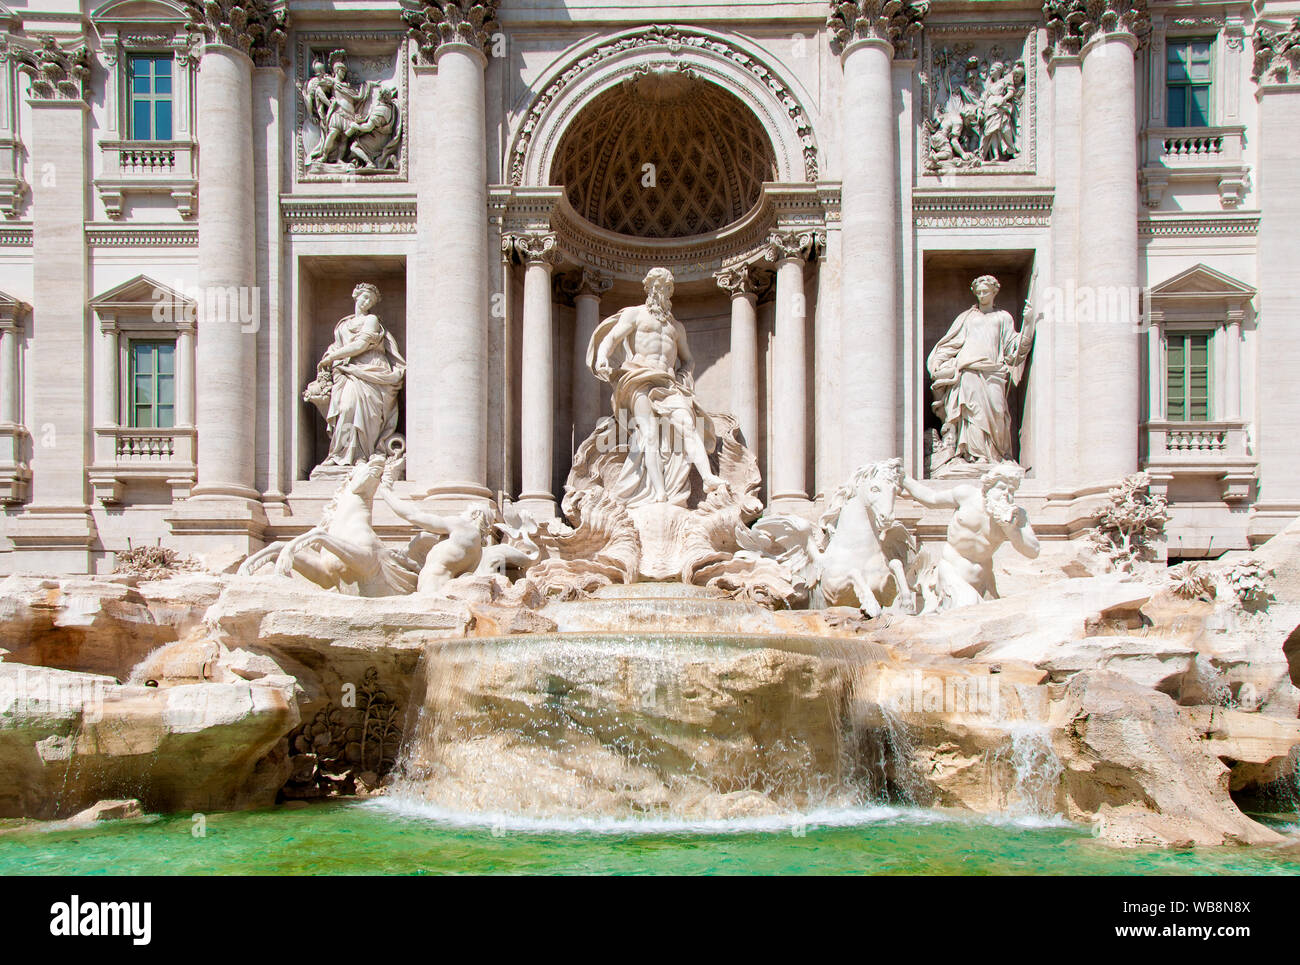 La fontaine de Trevi, Rome, Italie Banque D'Images